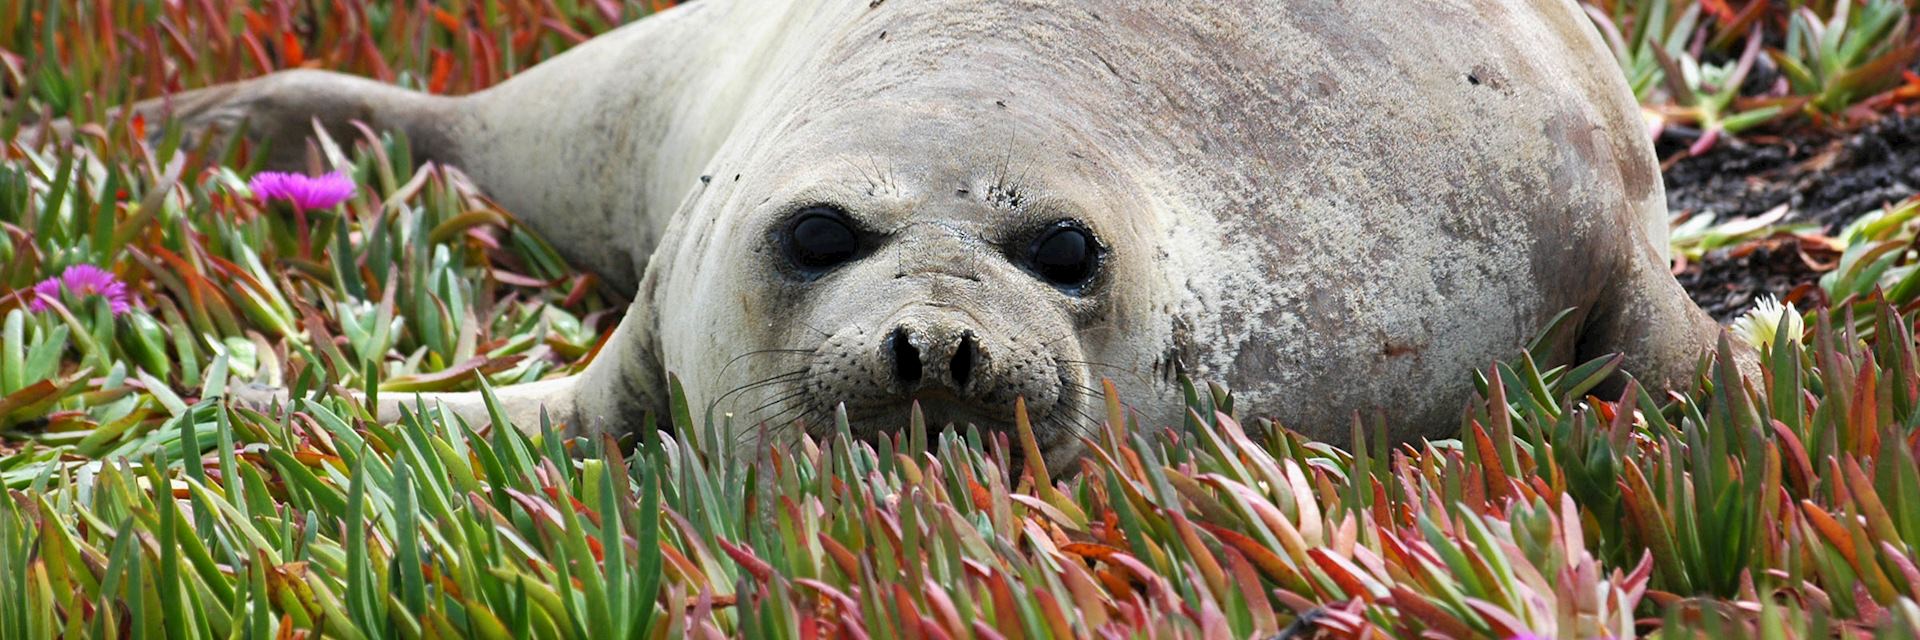 Baby seal at Peninsula Valdes